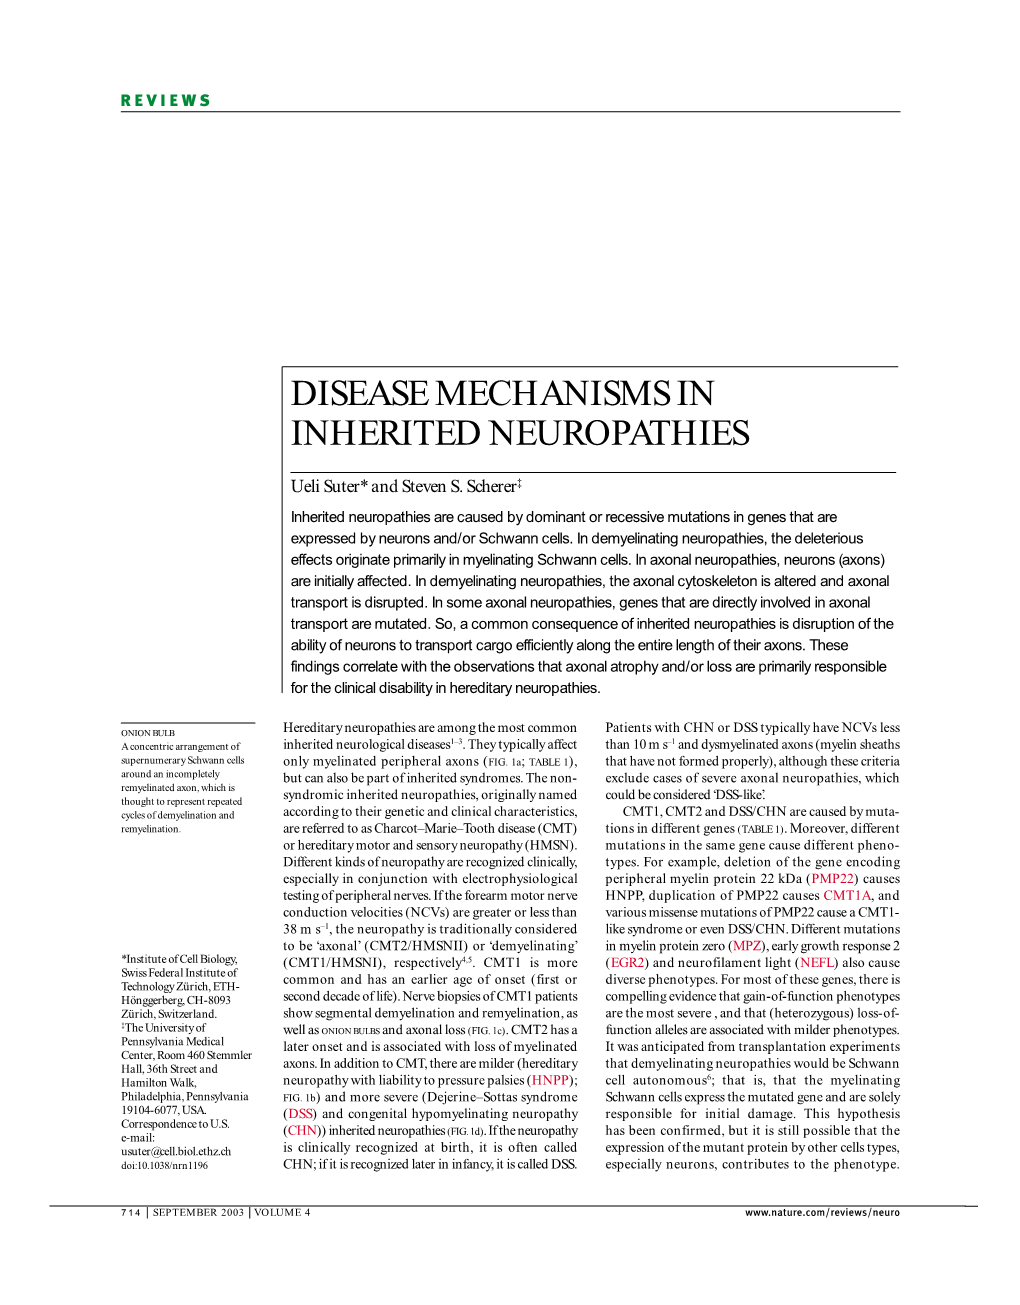 Disease Mechanisms in Inherited Neuropathies